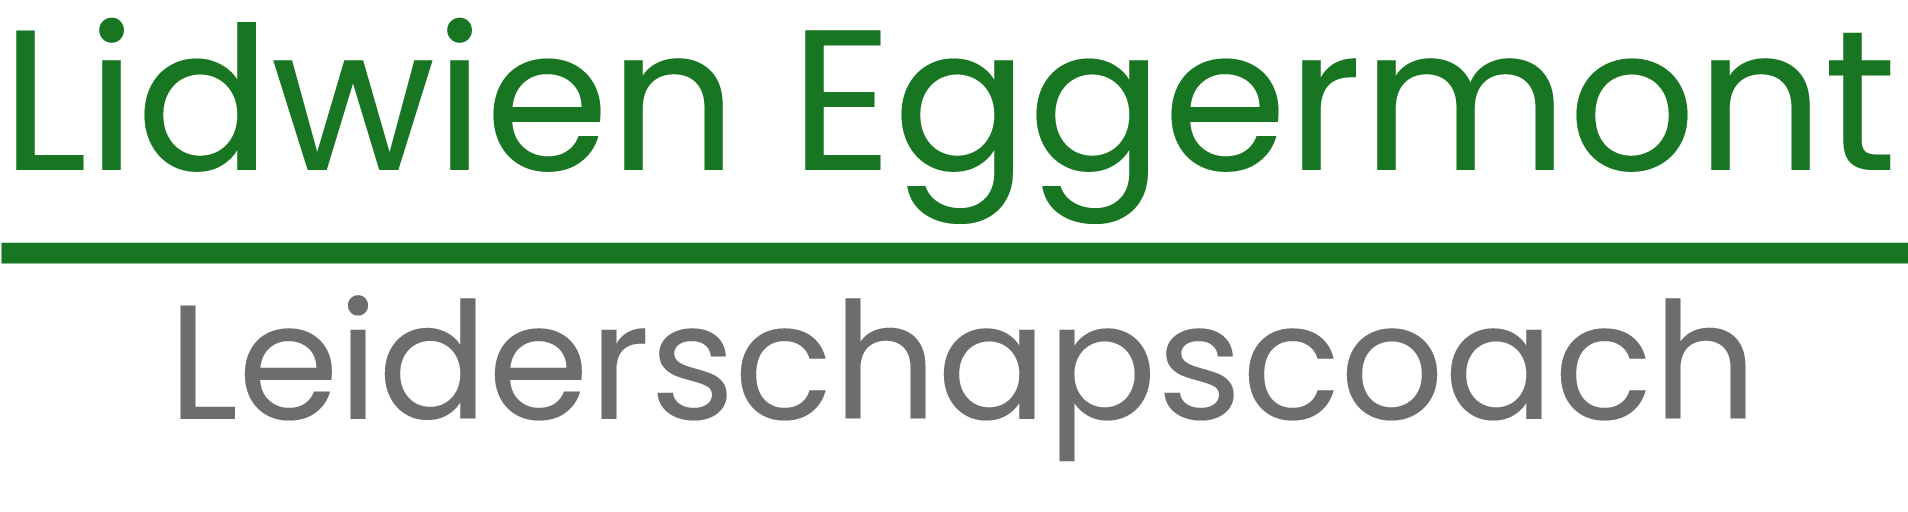 Lidwien Eggermont logo